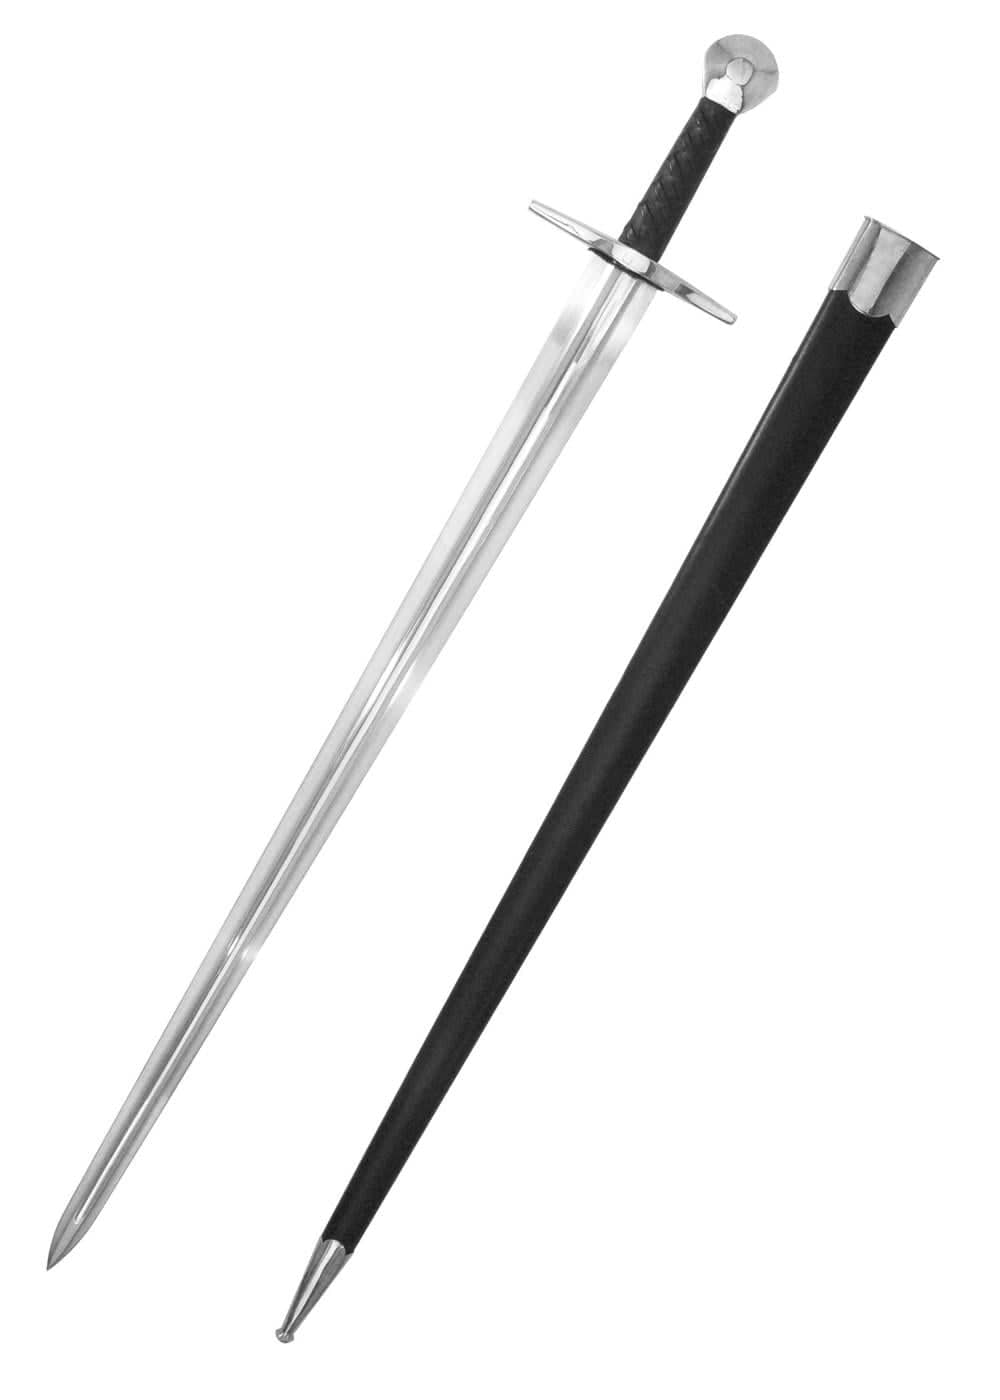 HN-SH2000 Espada con hoja de acero al carbono, Sir William Marshall - Espadas y Más